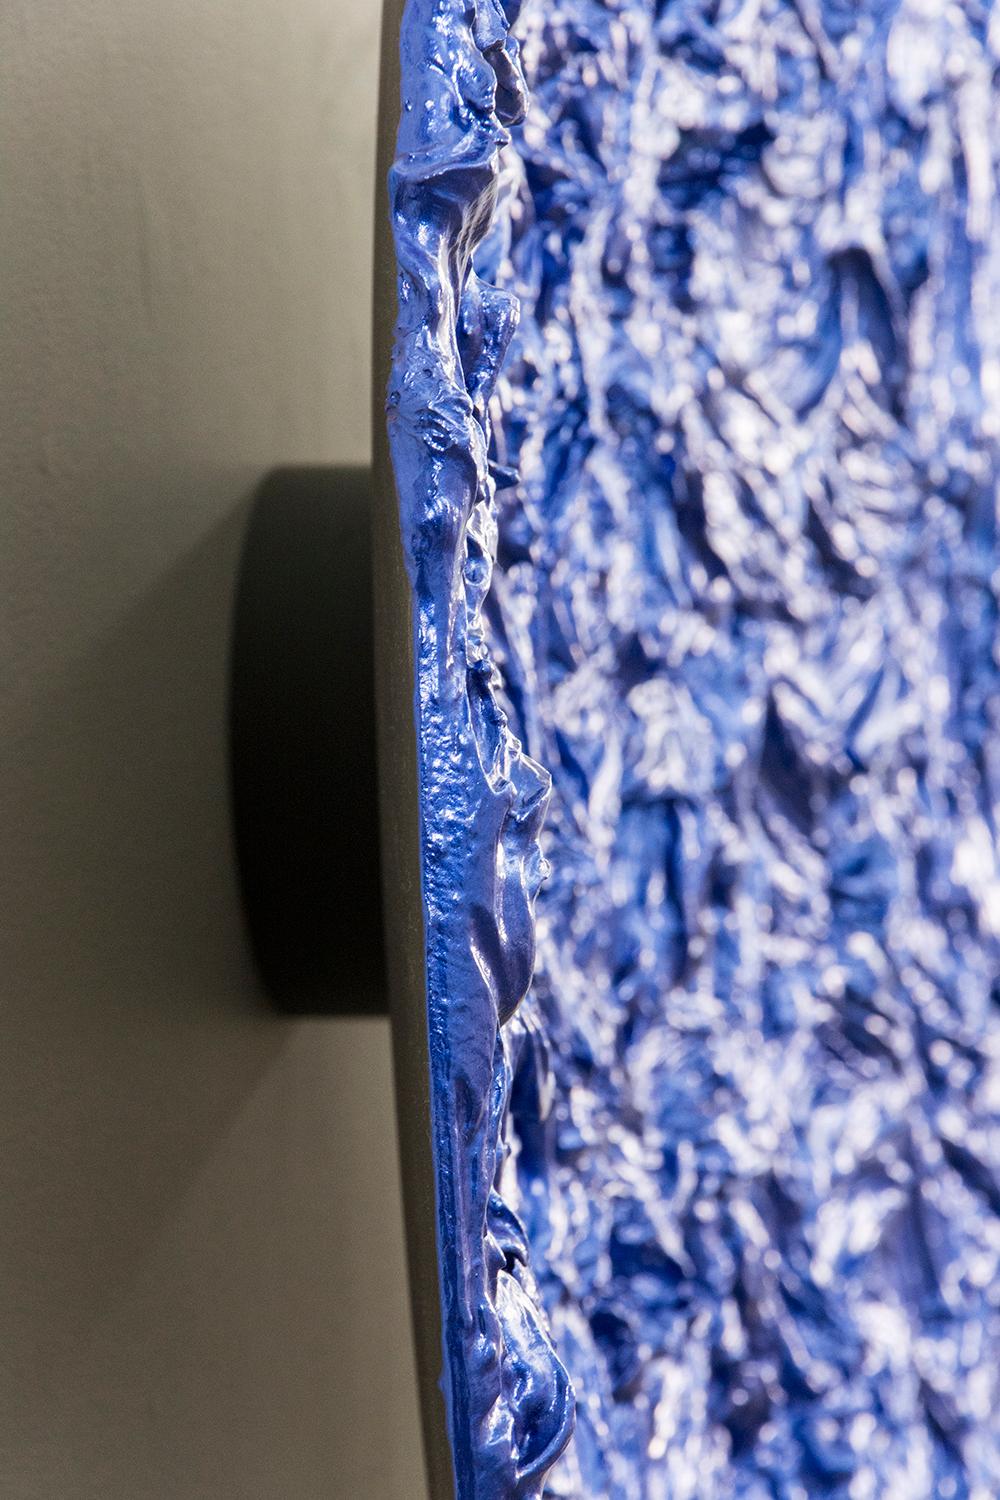 Tondo Storm Surge Cobalt - brillant, bleu, empâtement, abstrait, acrylique sur aluminium - Contemporain Painting par Shayne Dark